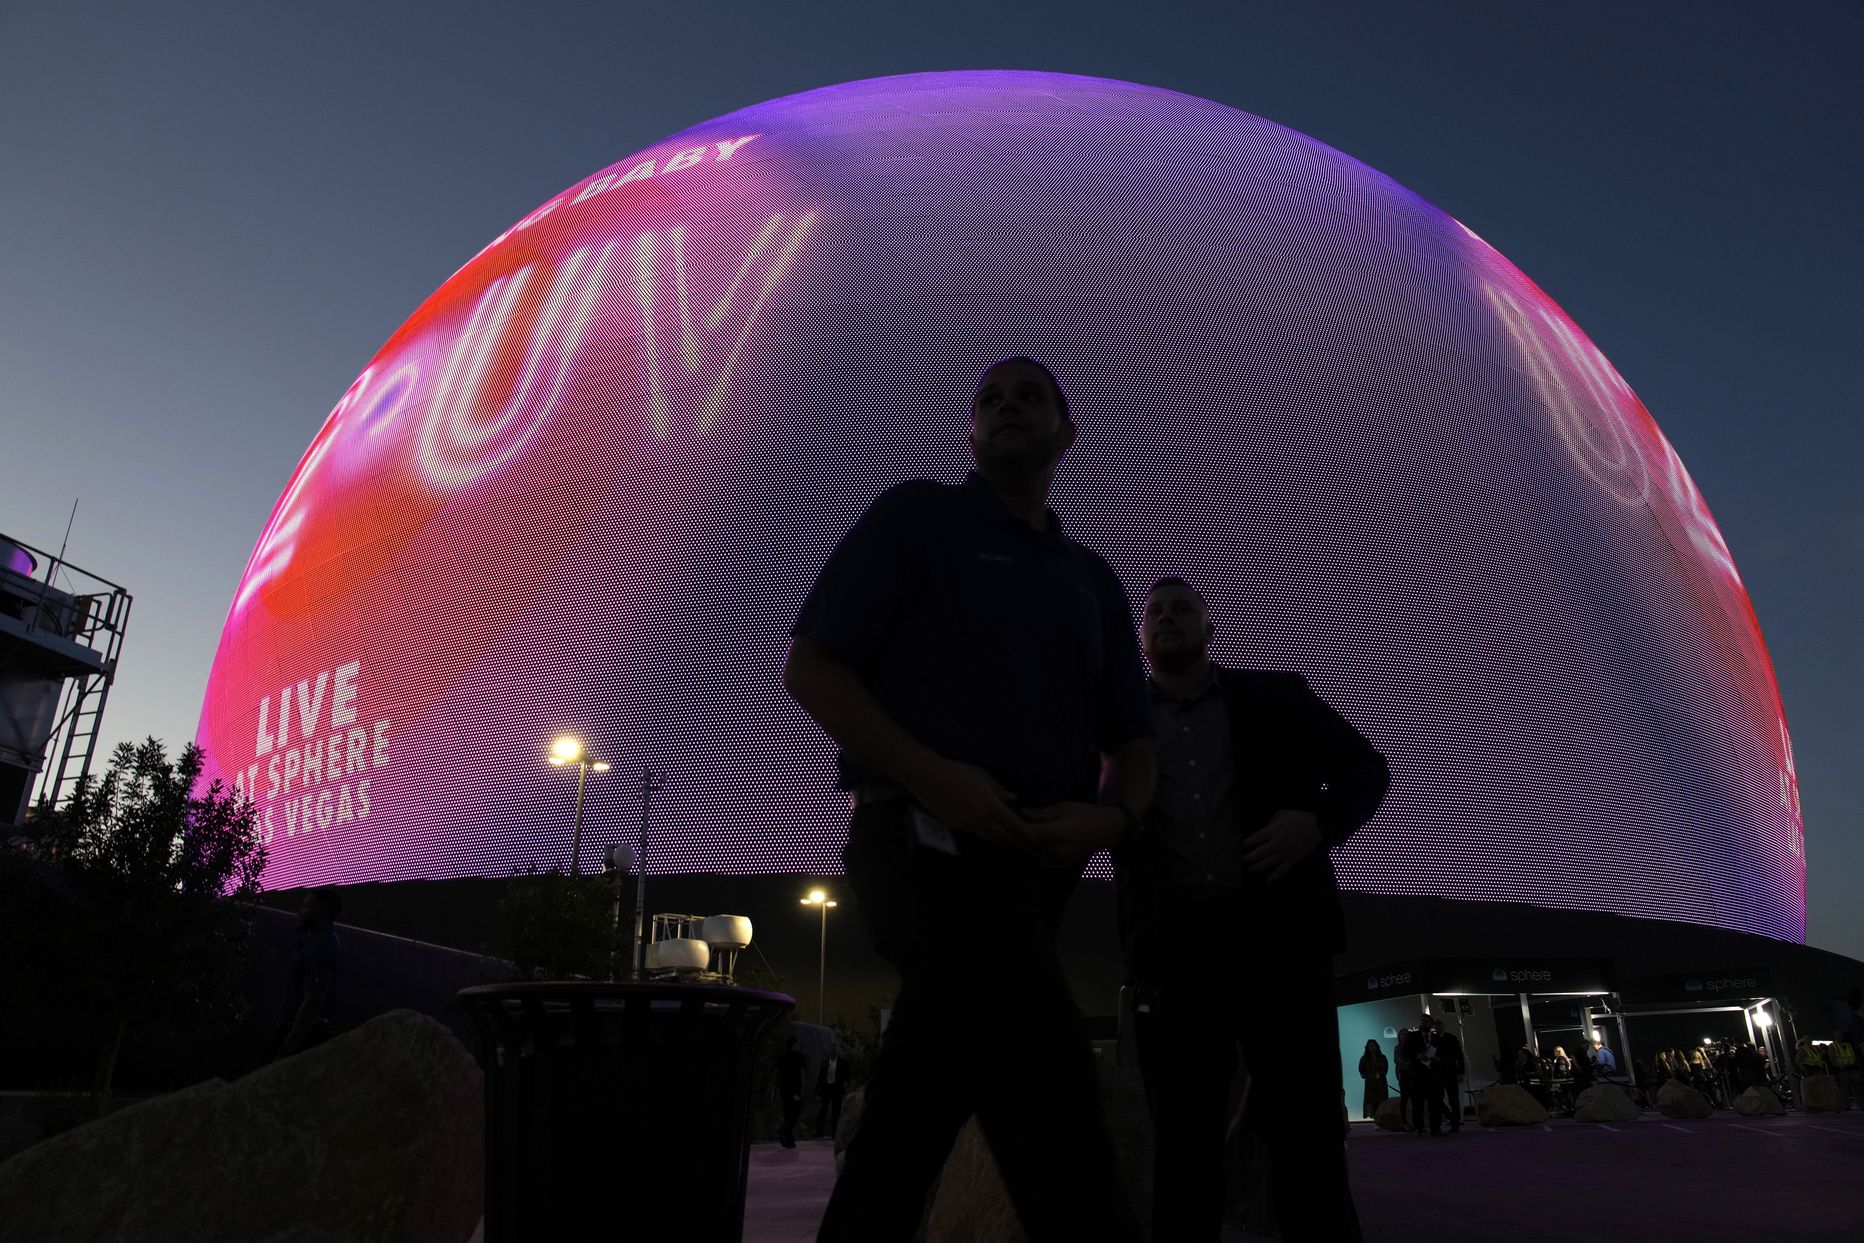 Sphere avamine Las Vegases reedel, 29. septembril